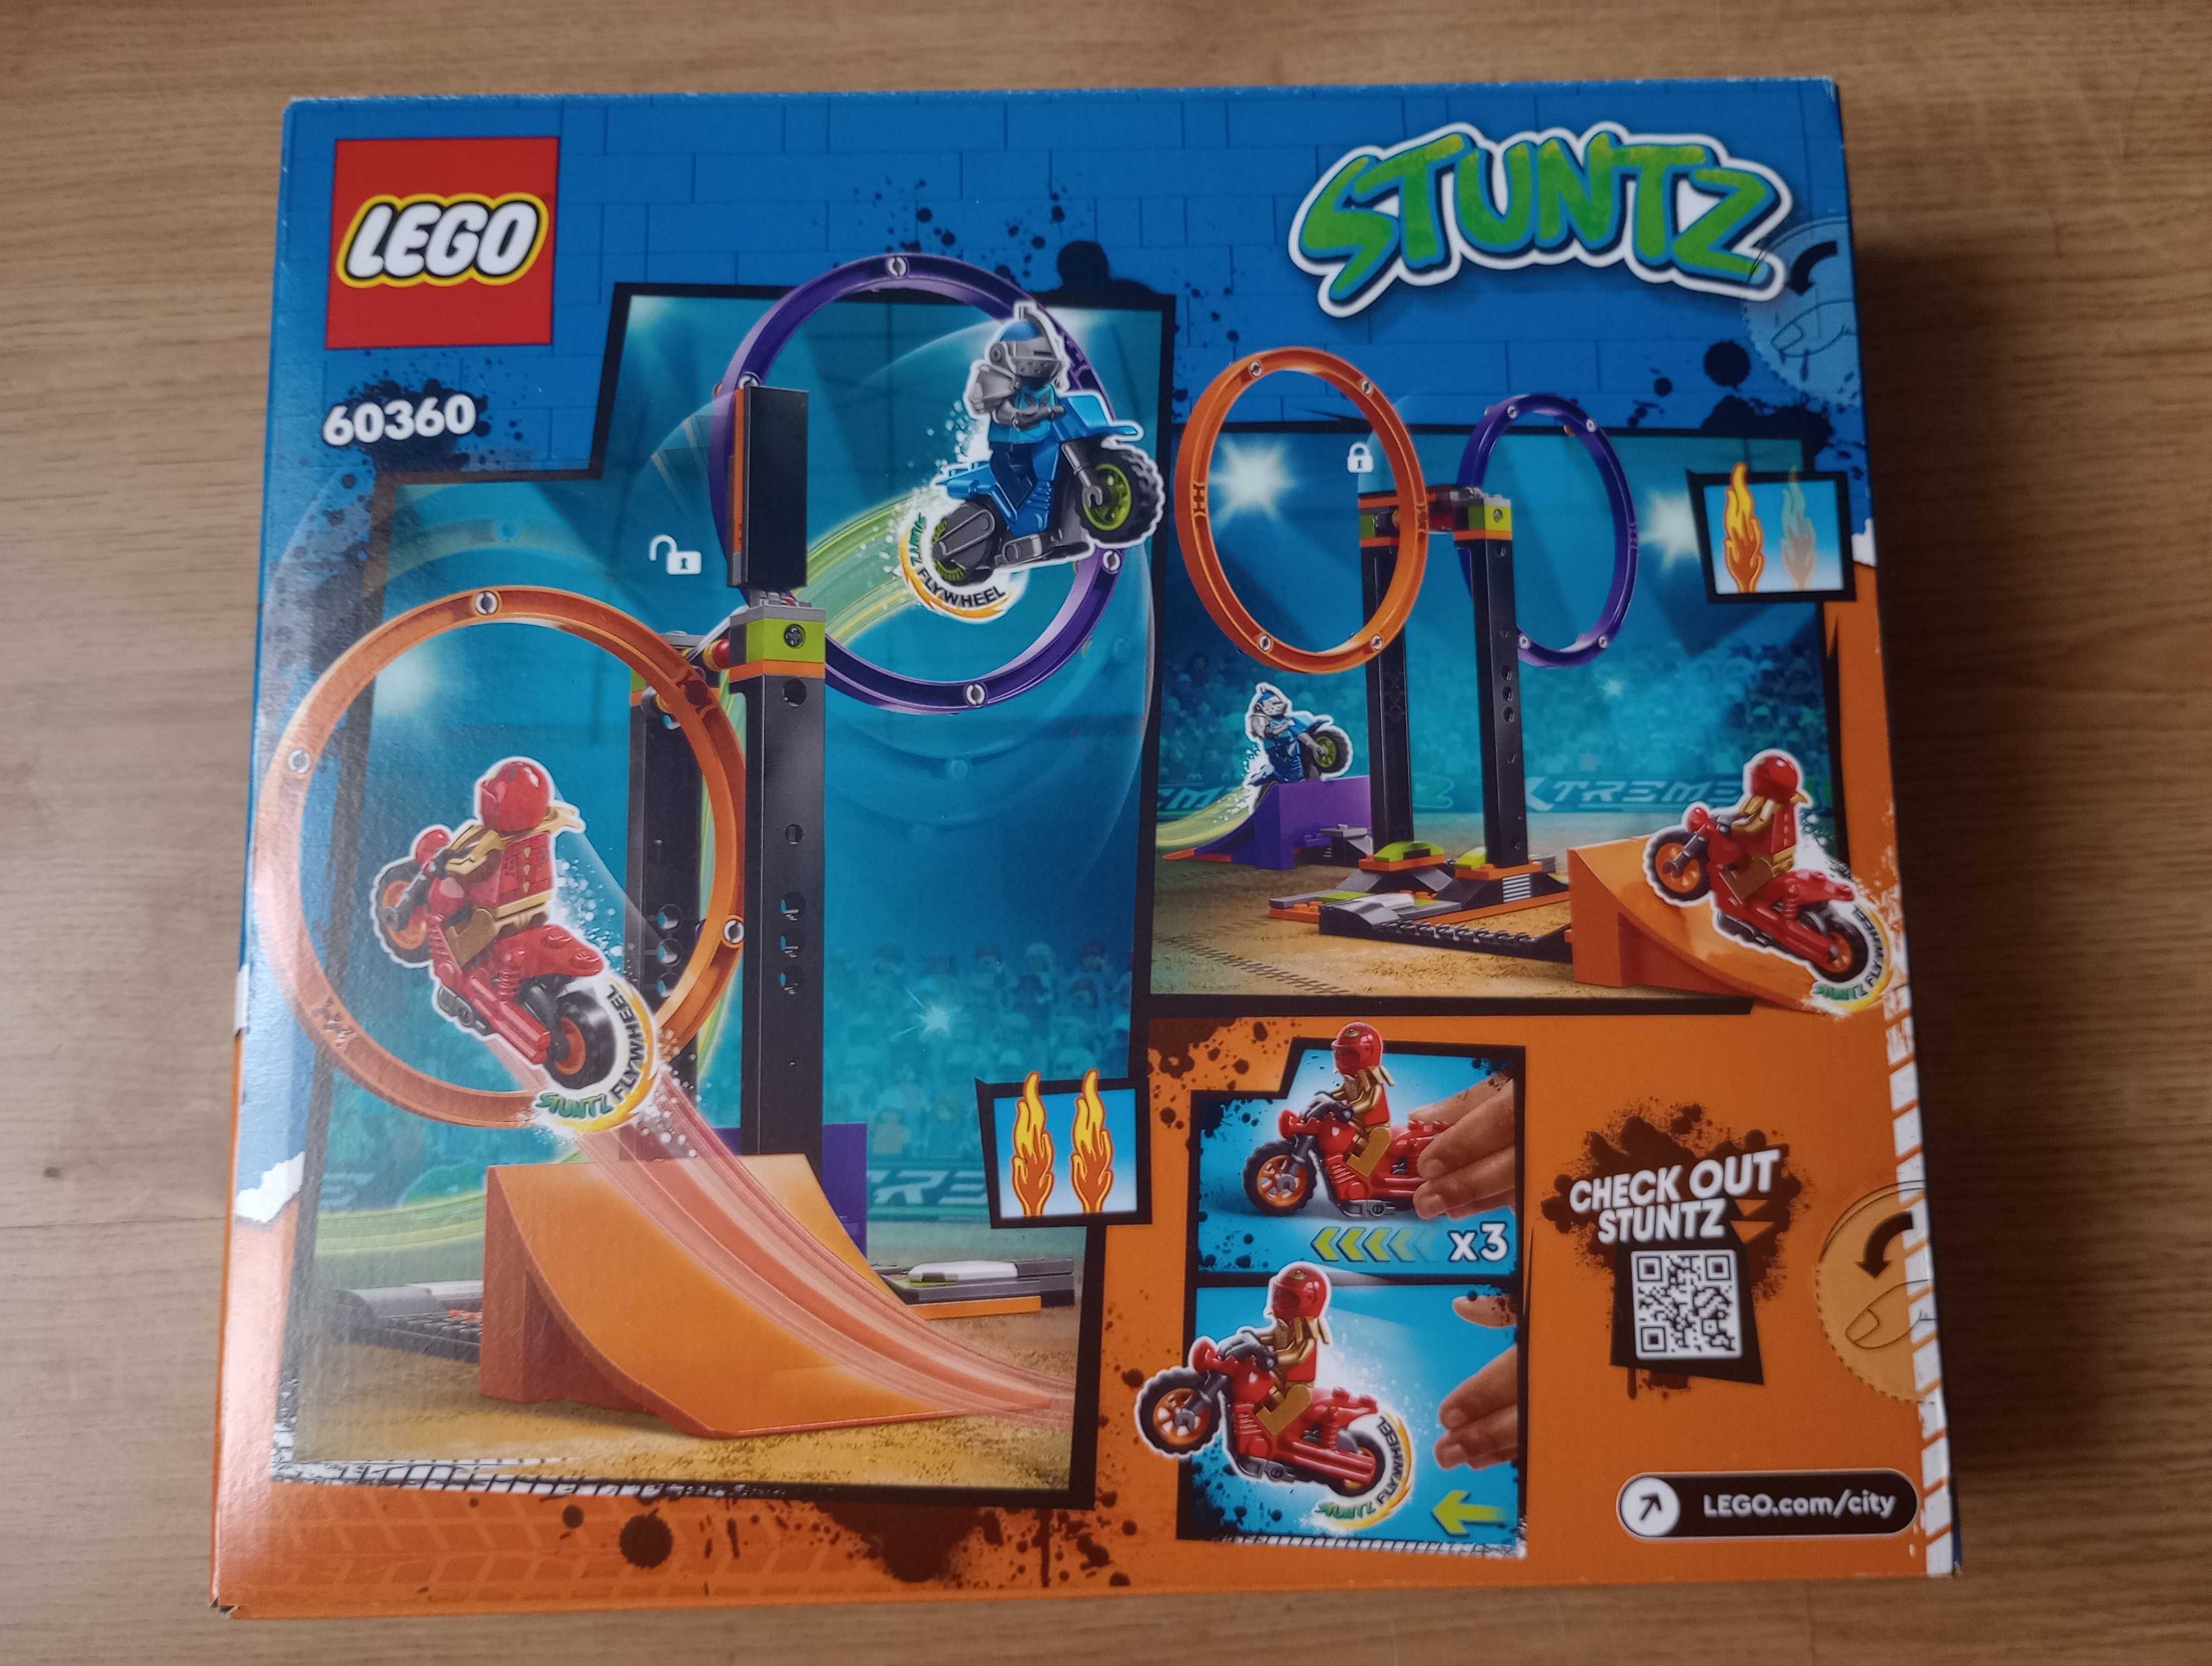 LEGO City 60360 Wyzwanie kaskaderskie obracające się okręgi. NOWE!